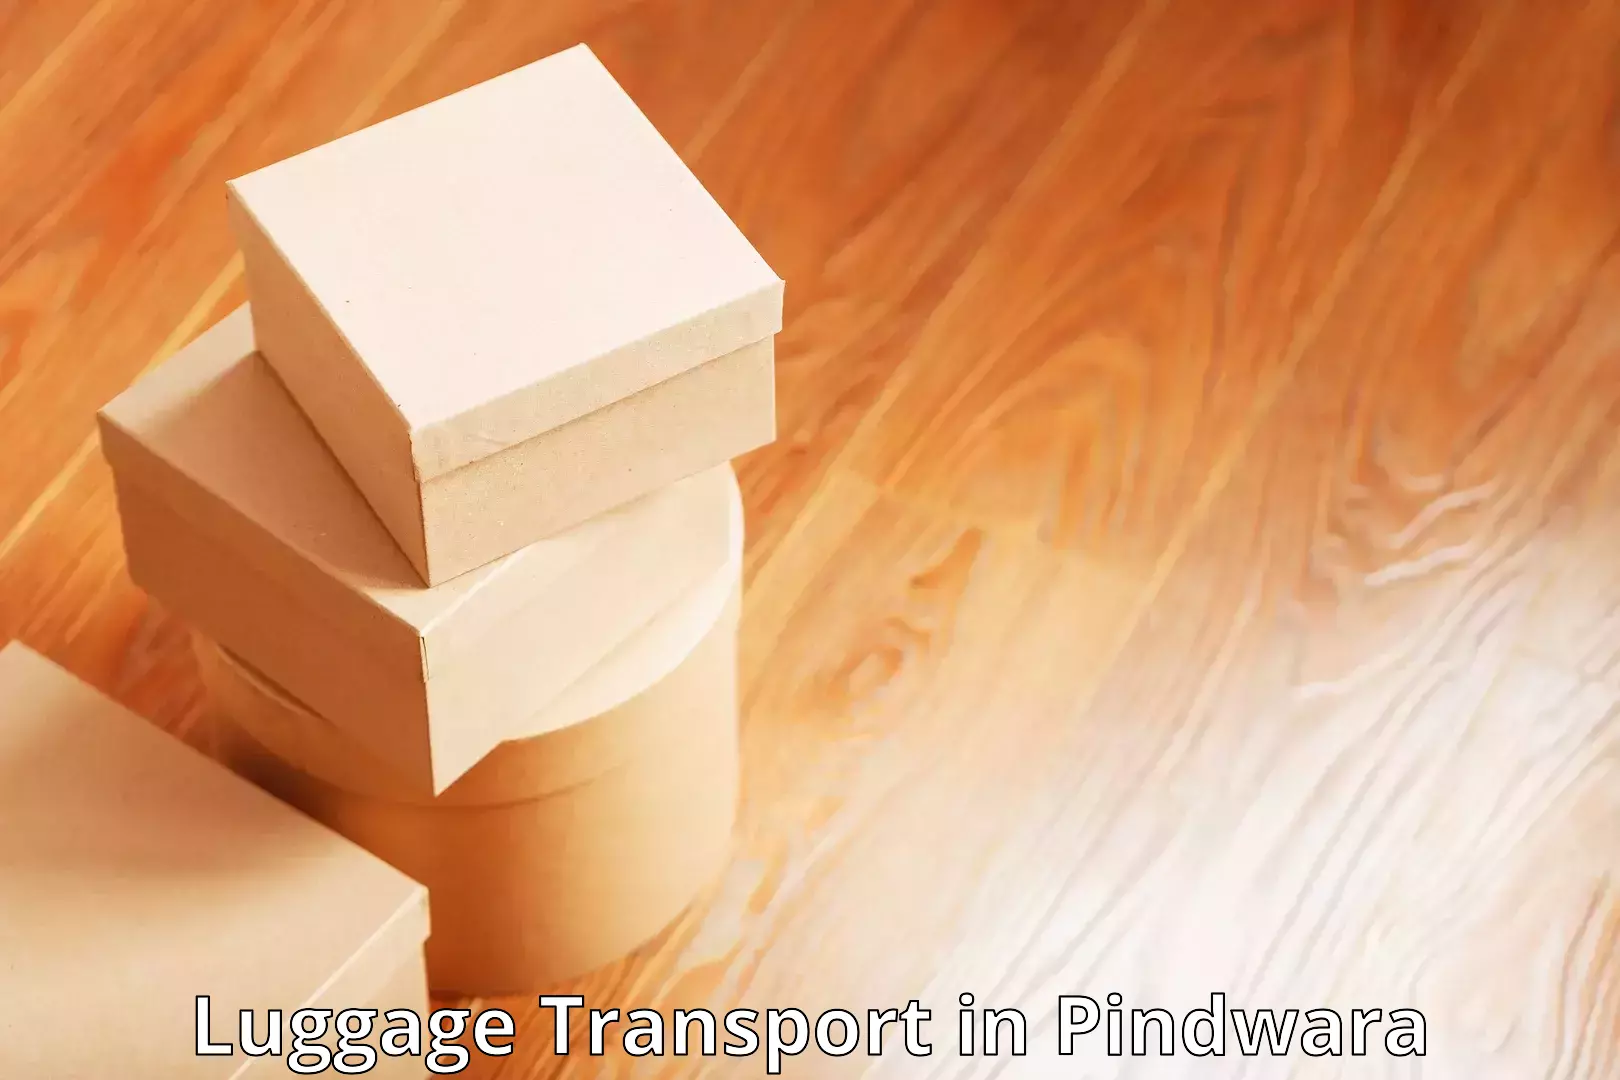 Baggage transport quote in Pindwara